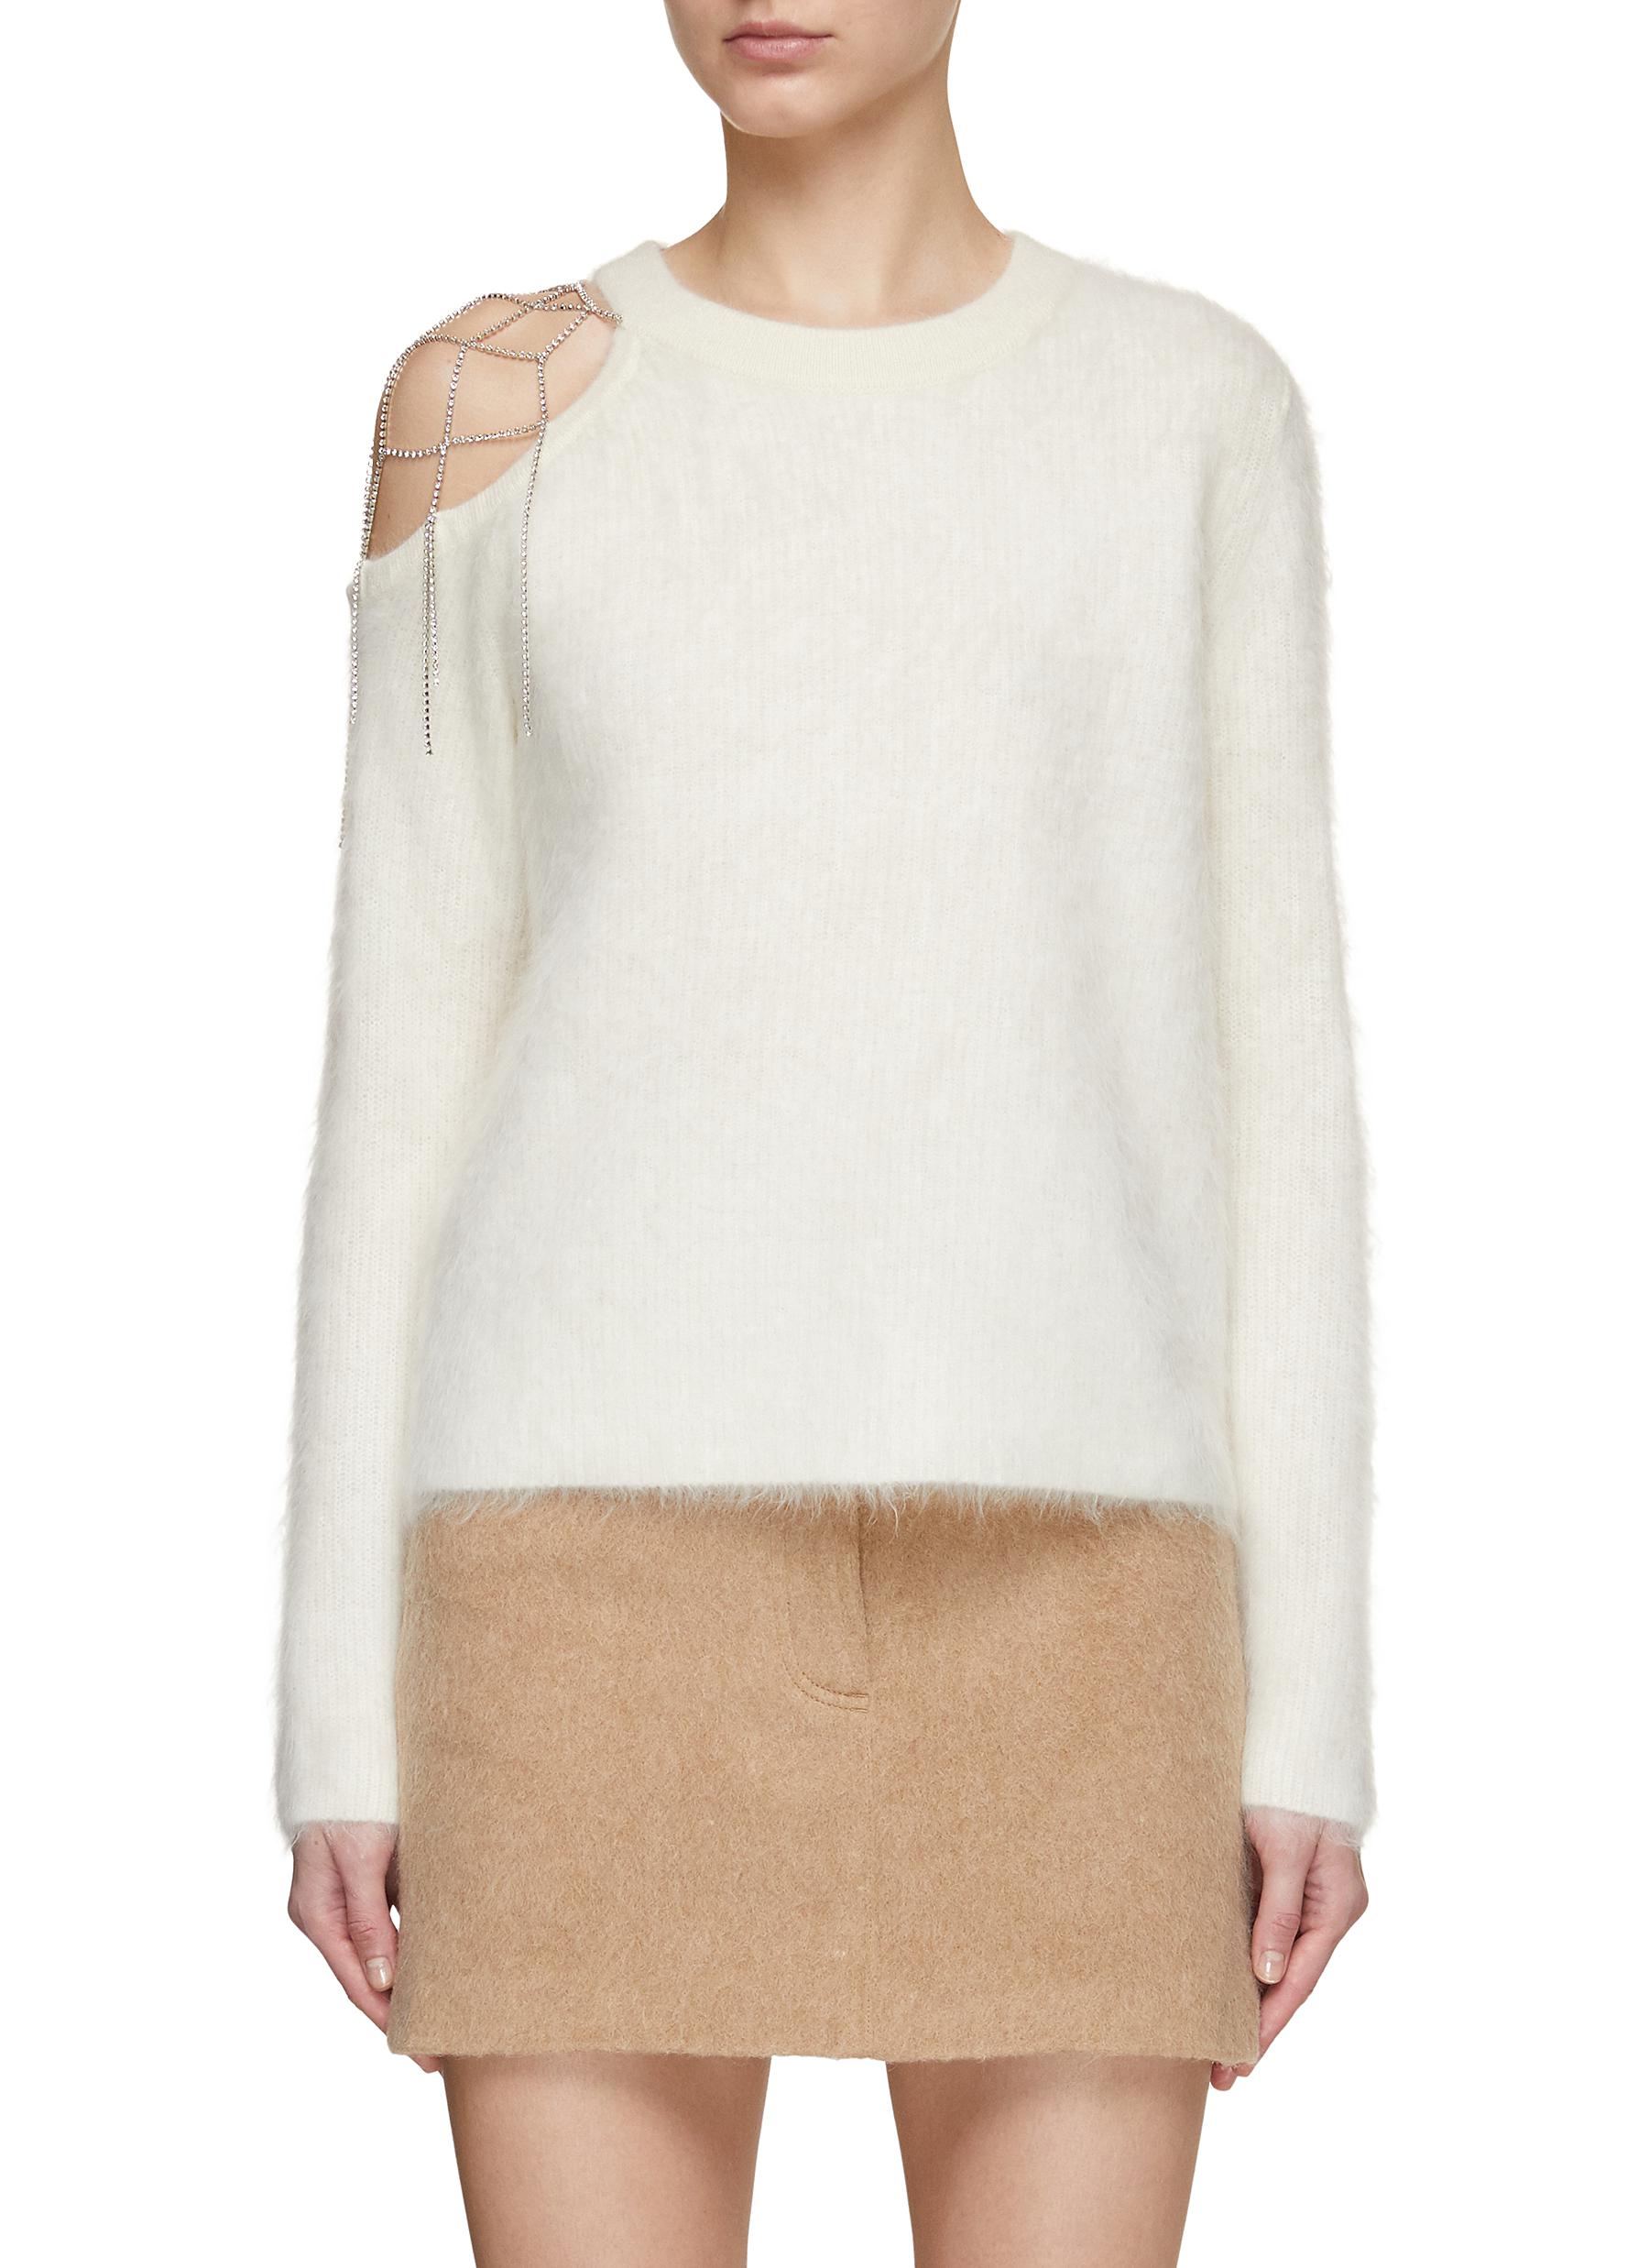 Swarovski Crystal Embellished Fluffy Cashmere One Shoulder Sweater